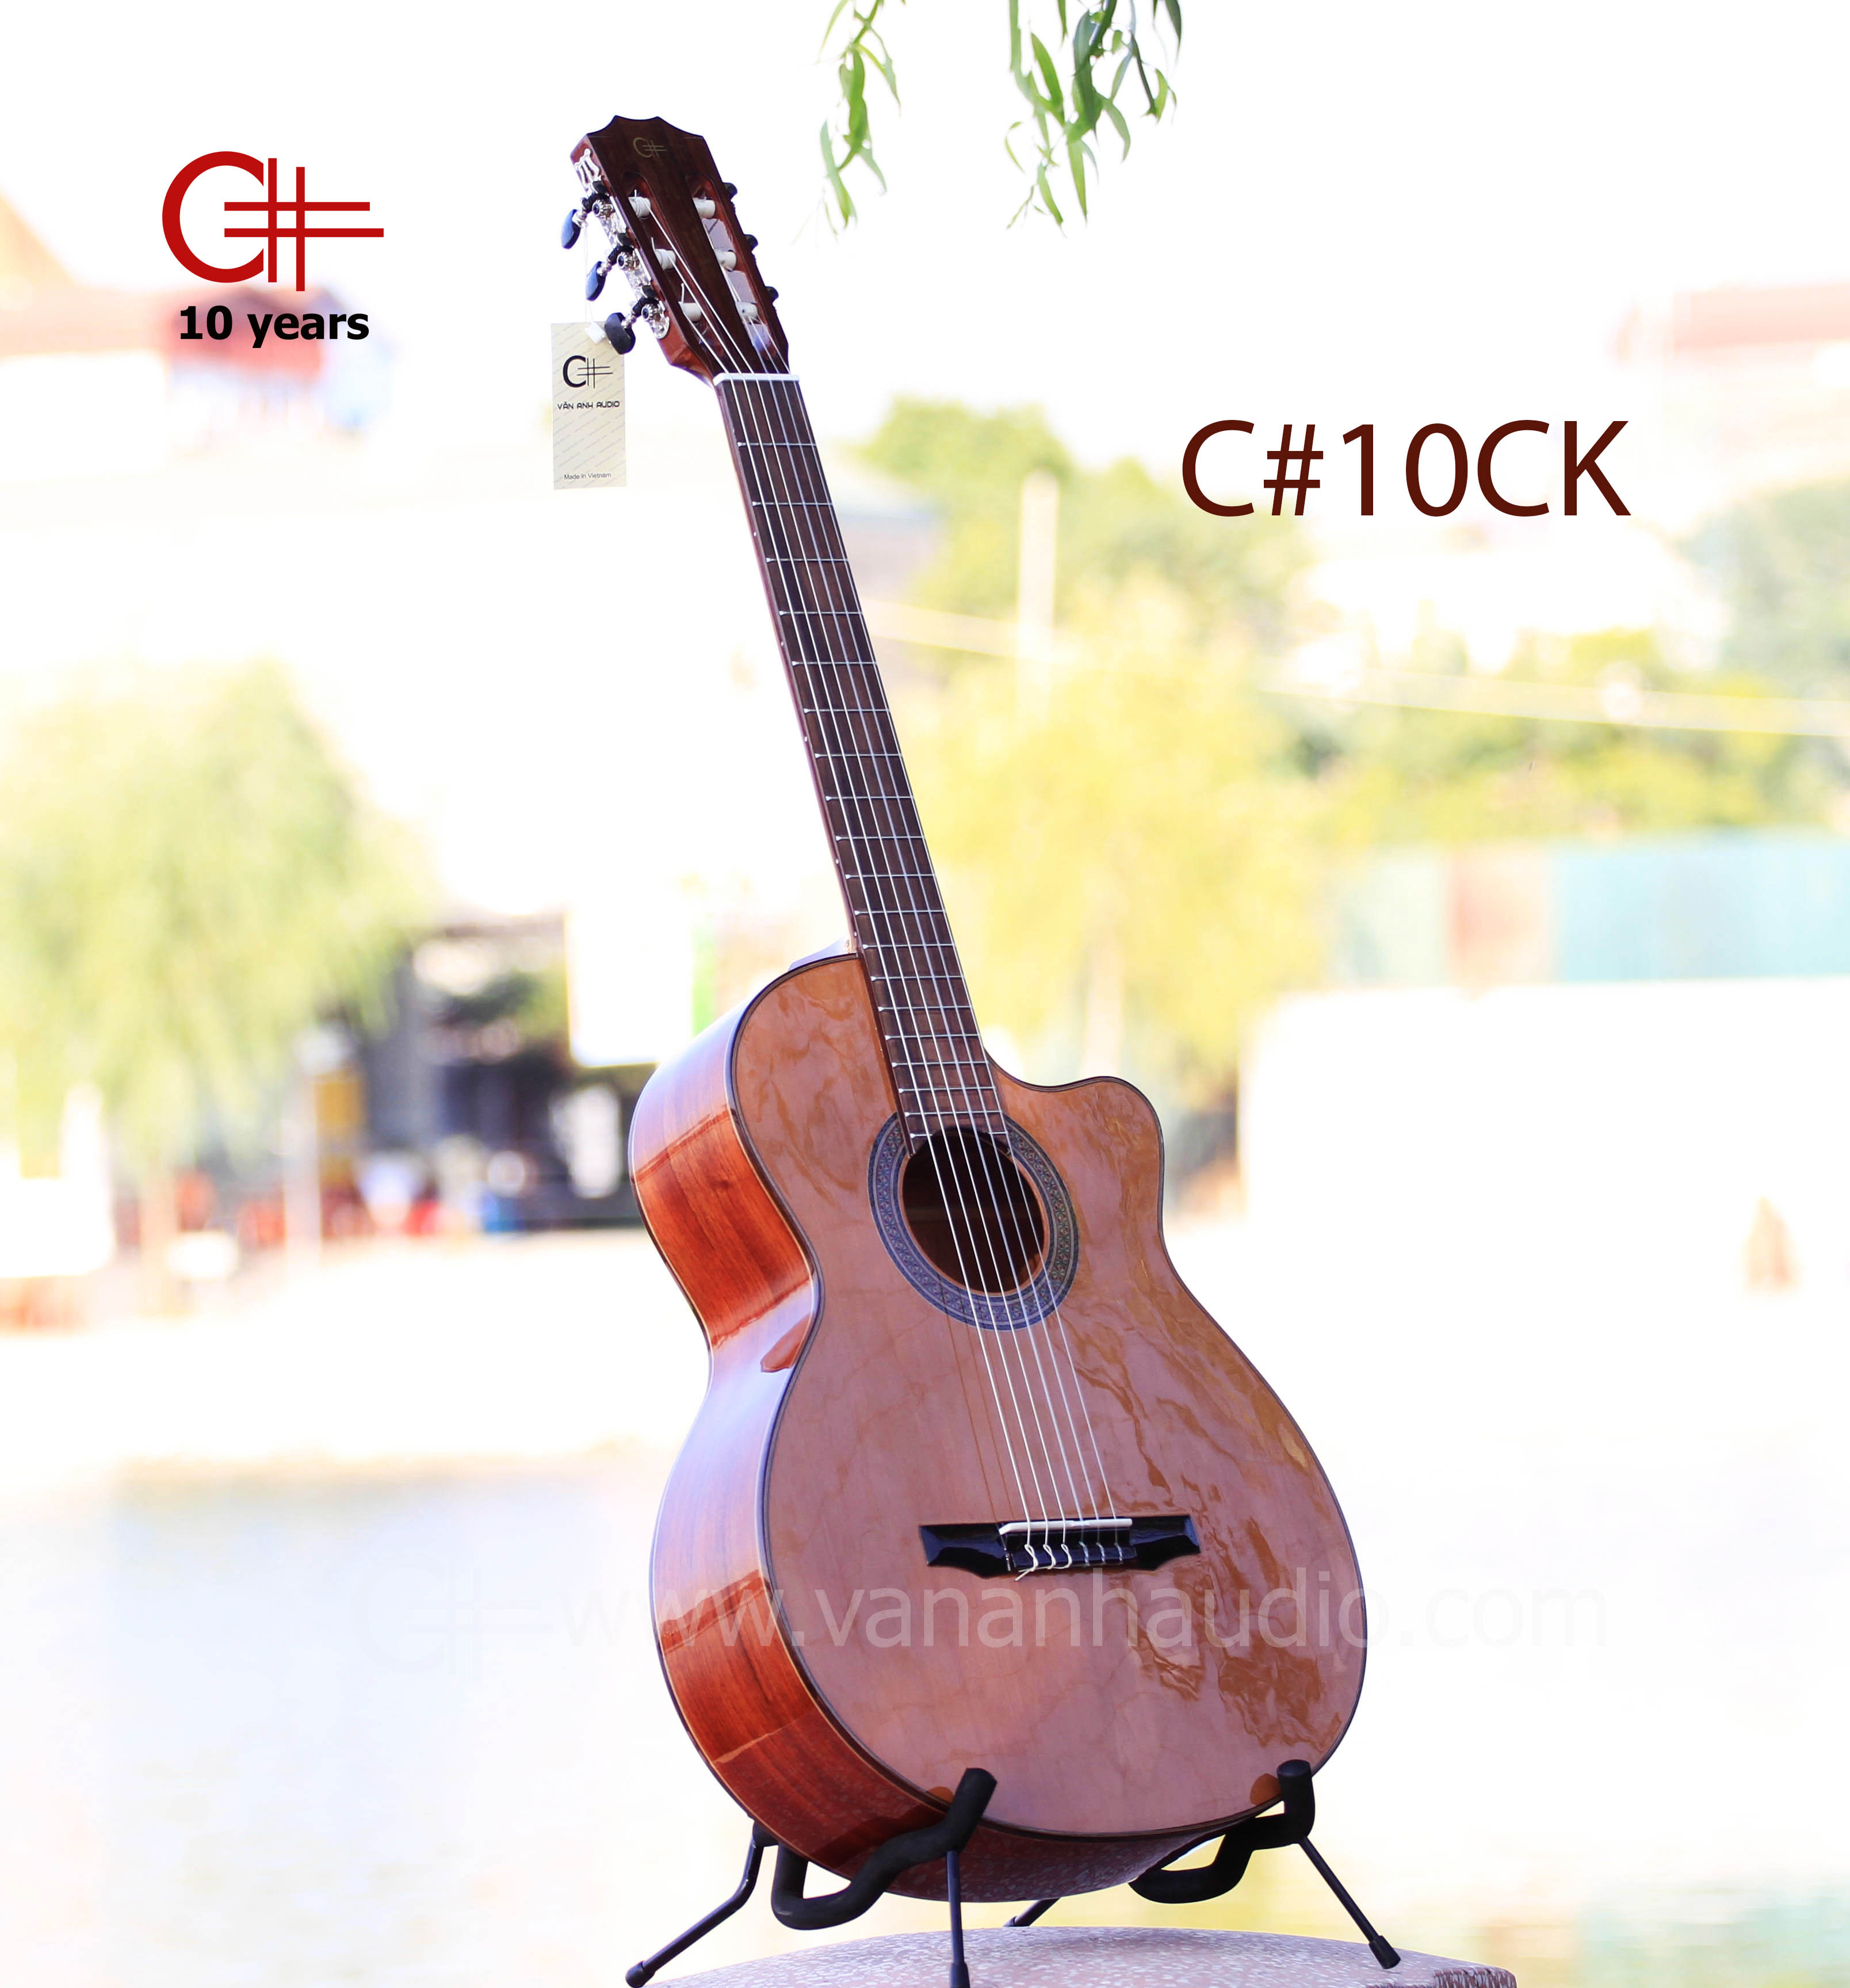 Đàn guitar classic C#10CK gắn EQ-Metb12